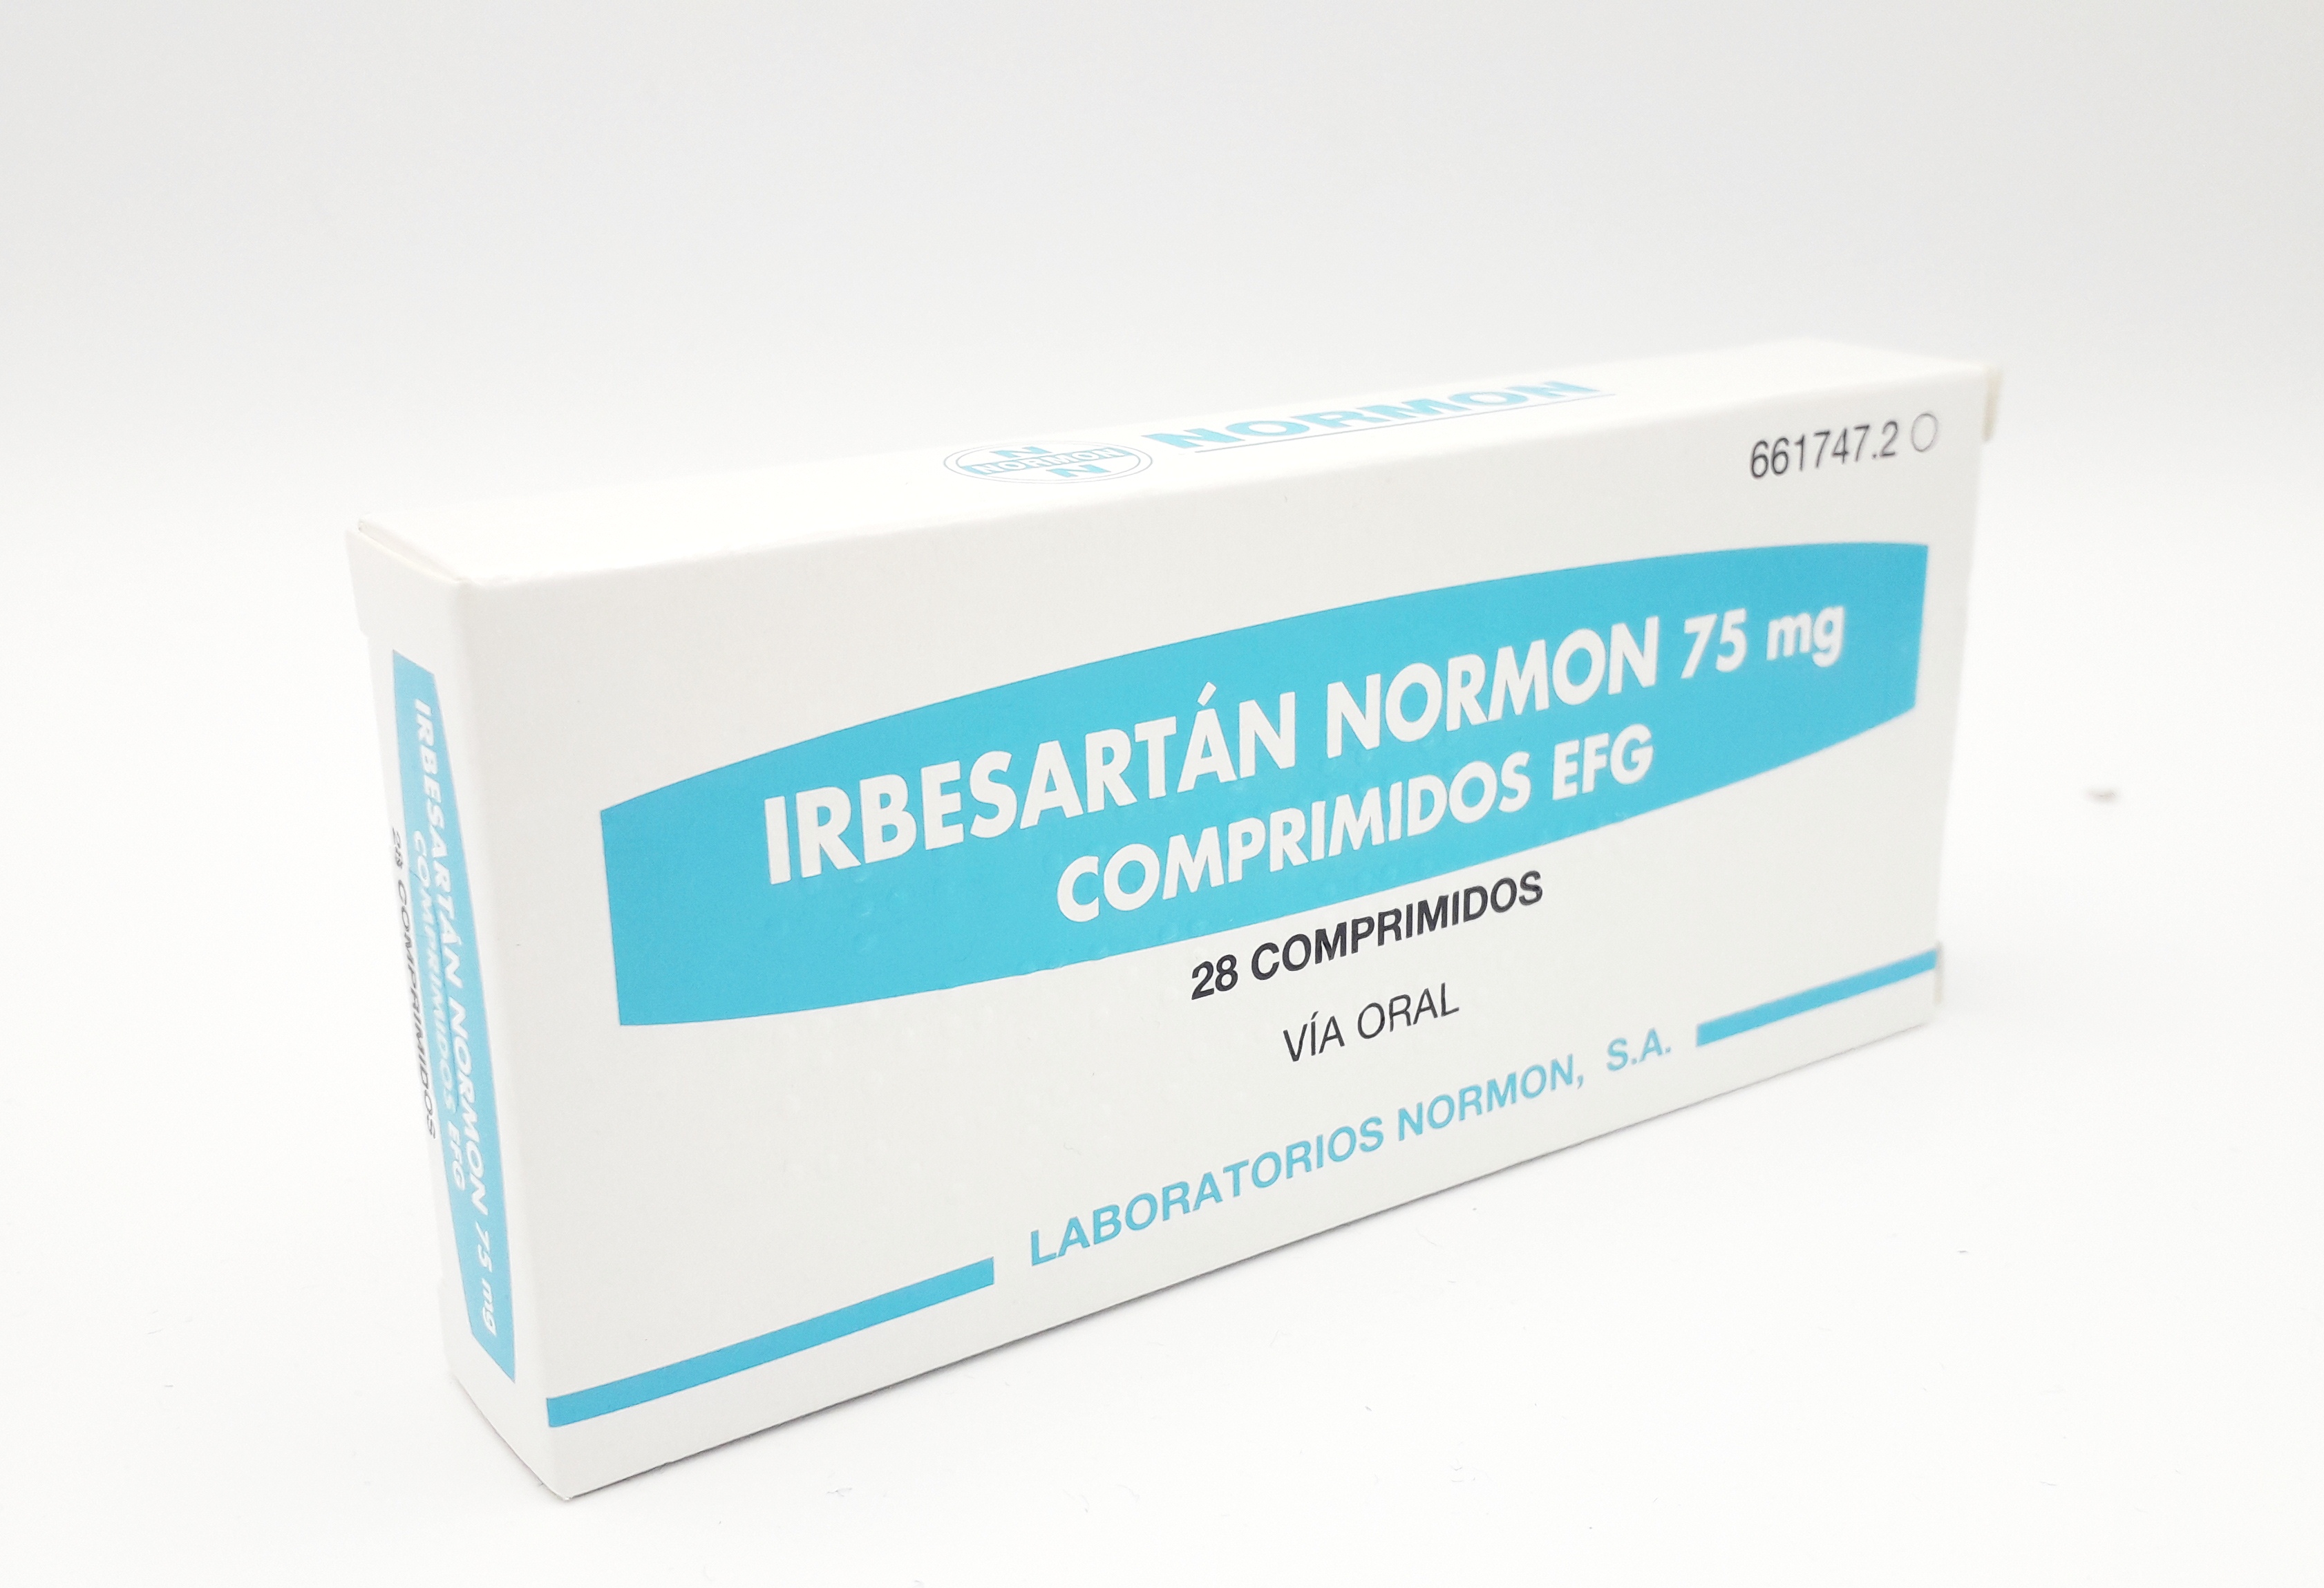 IRBESARTAN NORMON EFG 75 mg 28 COMPRIMIDOS